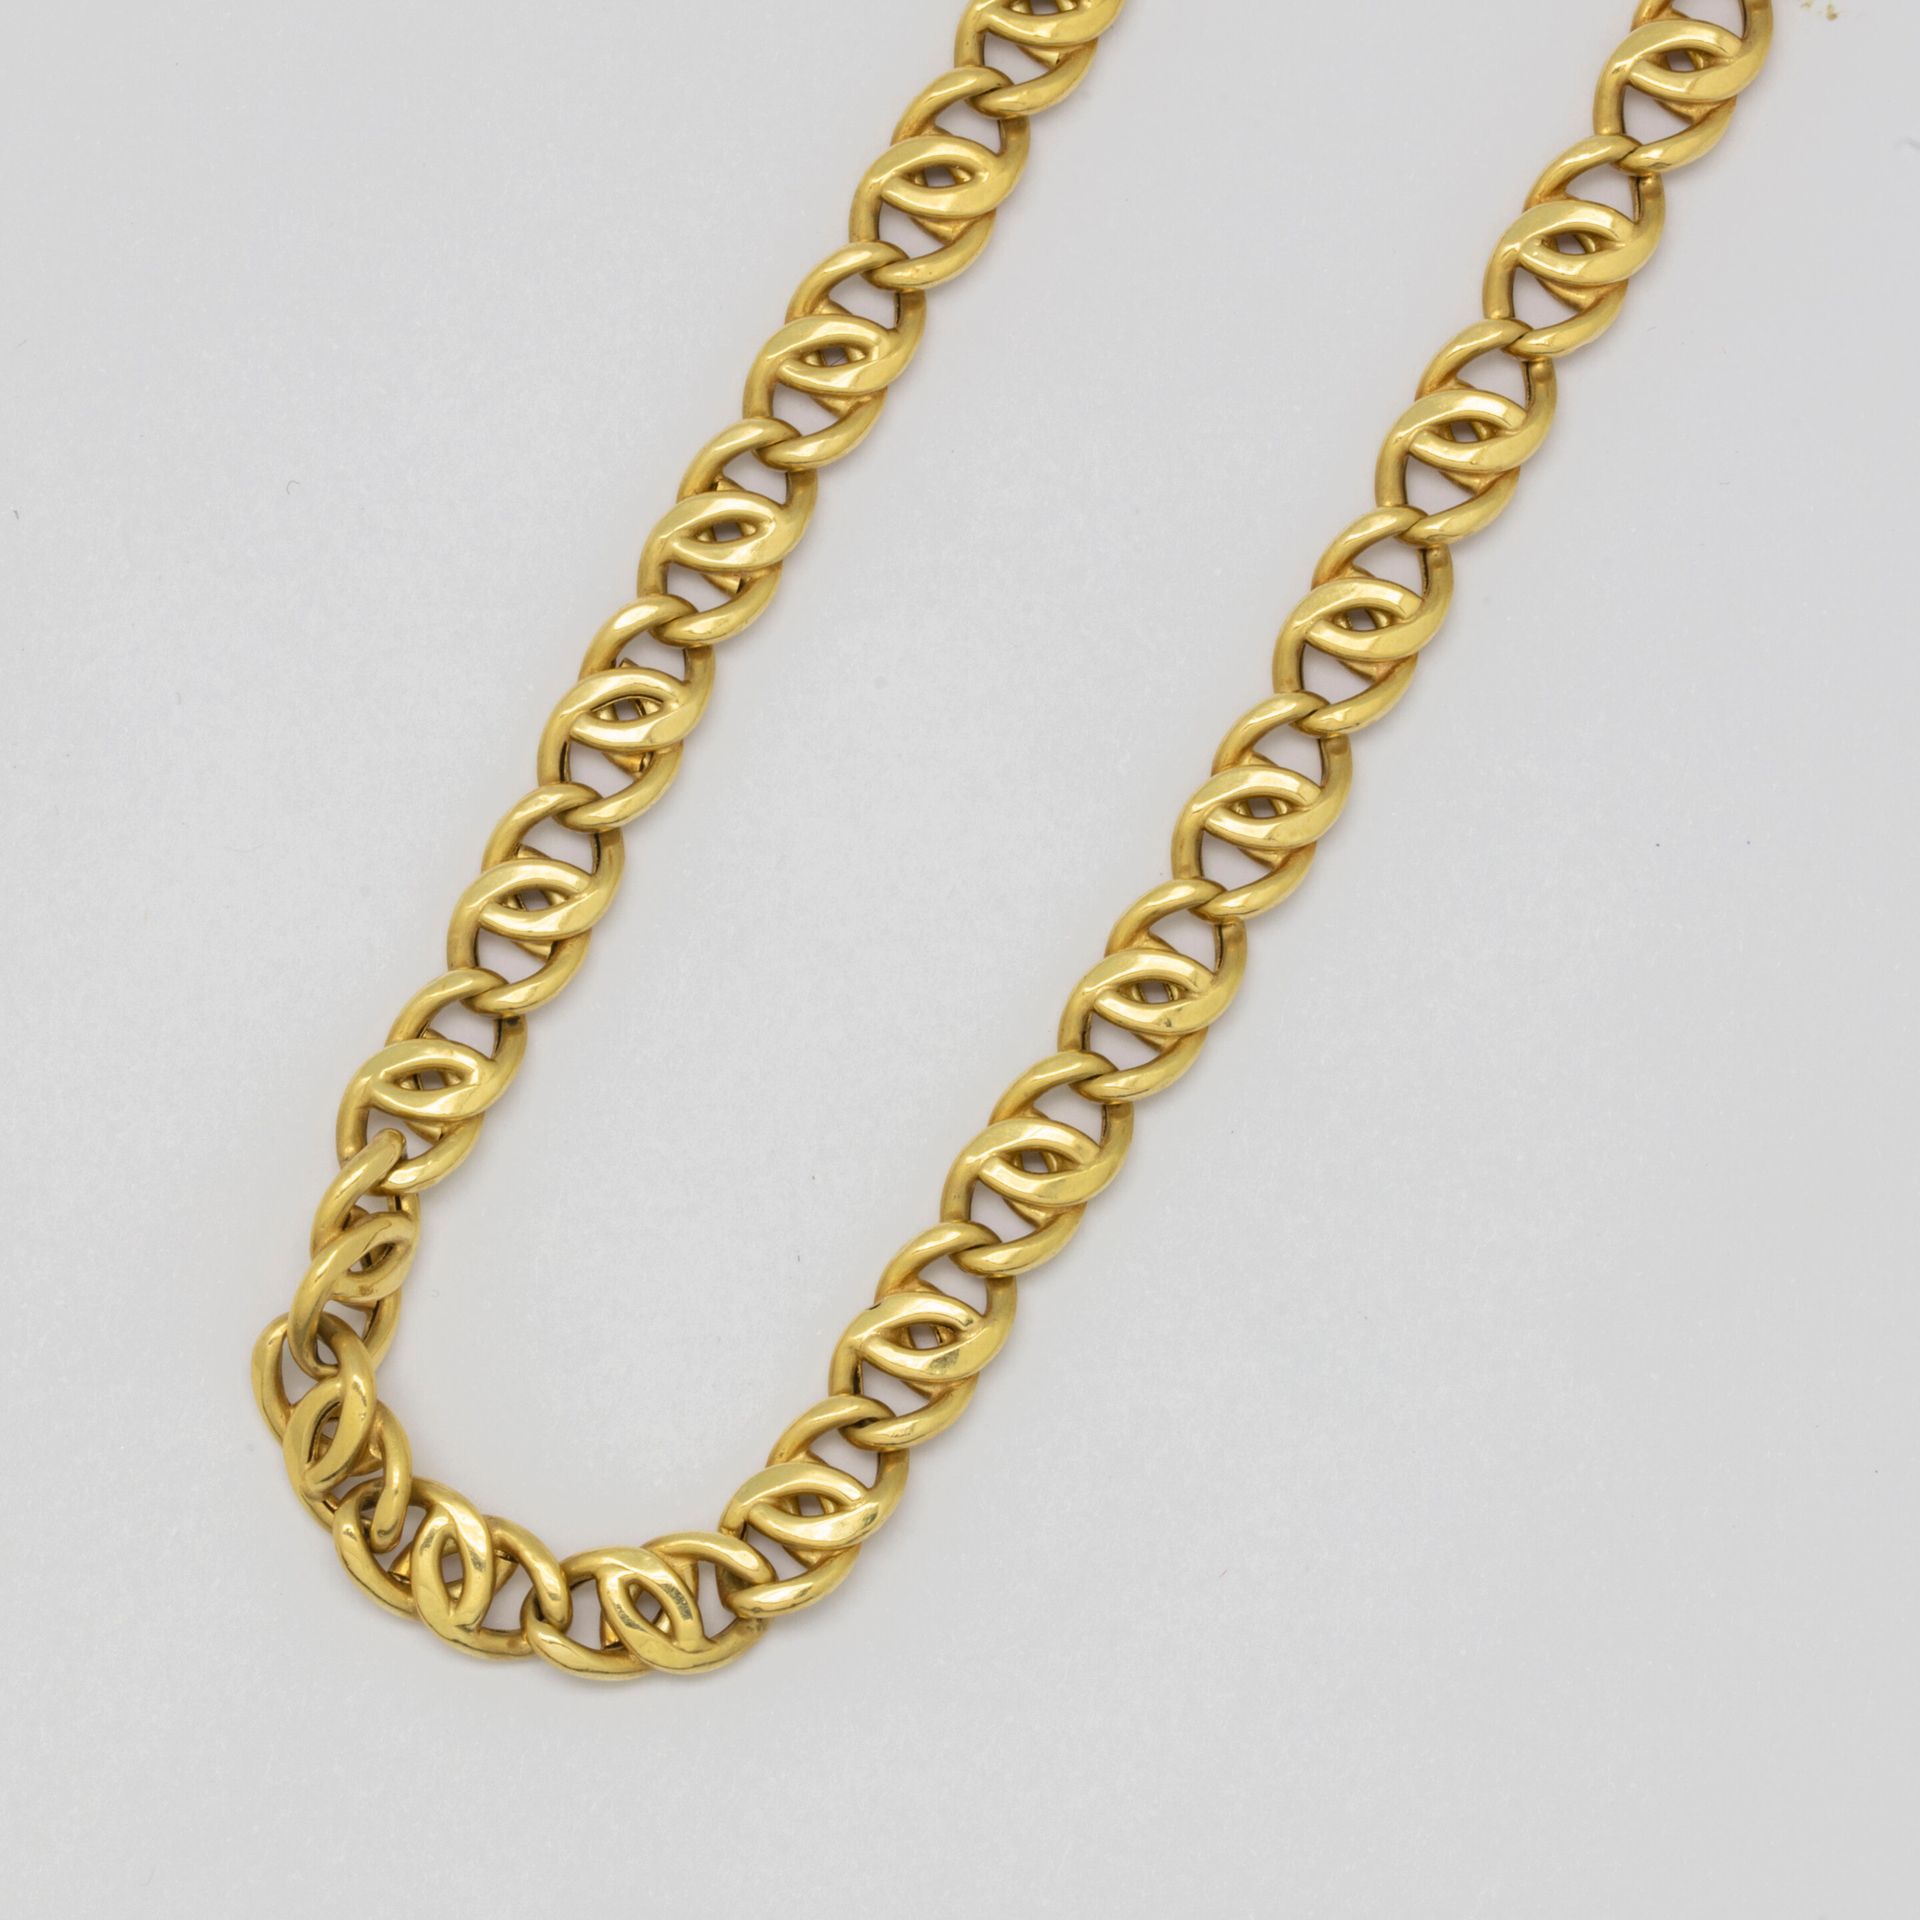 Null Halskette aus Gelbgold mit großen Gliedern.

Gewicht 20,8 g